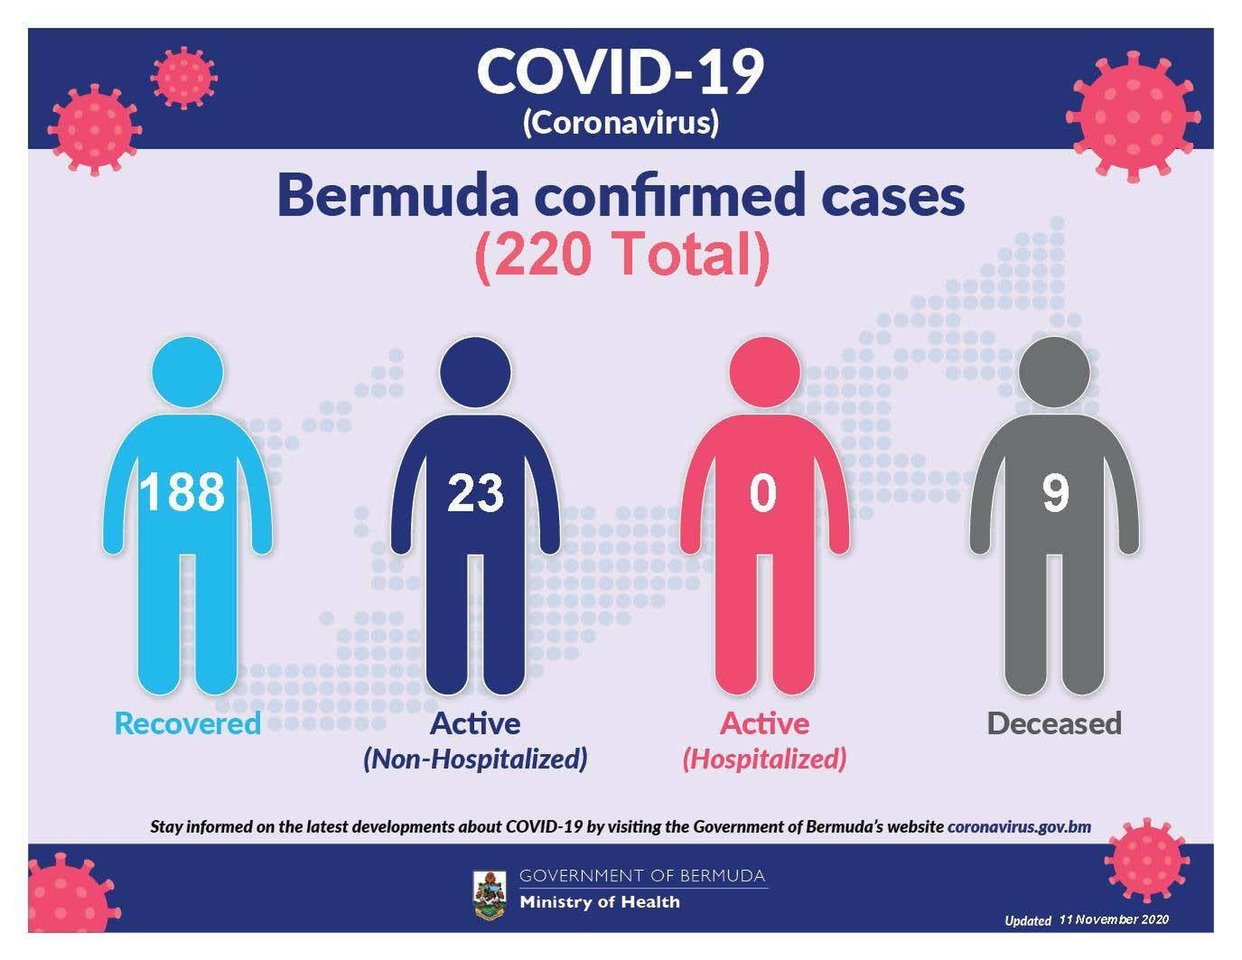 5 new COVID-19 cases reported in Bermuda, 12 November